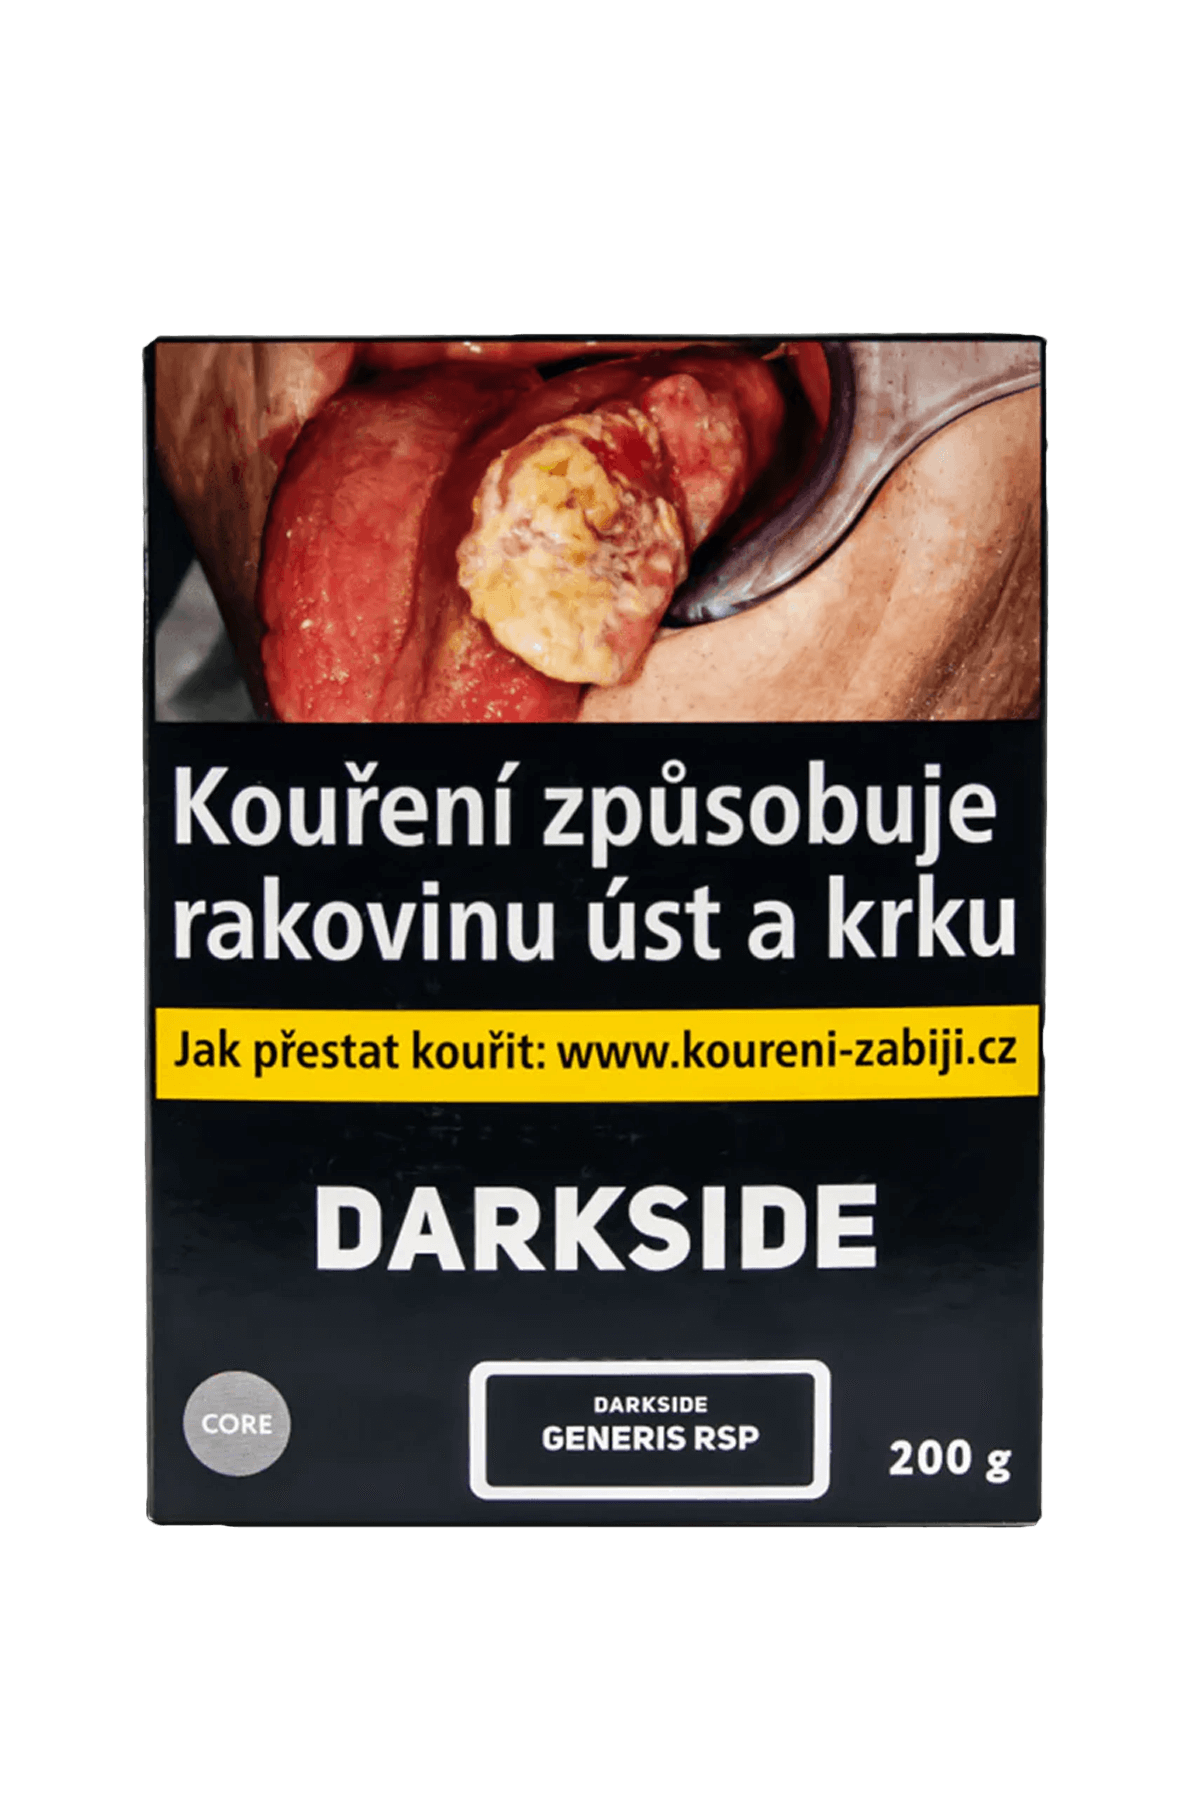 Tabák - Darkside Core 200g - Generis Rsp